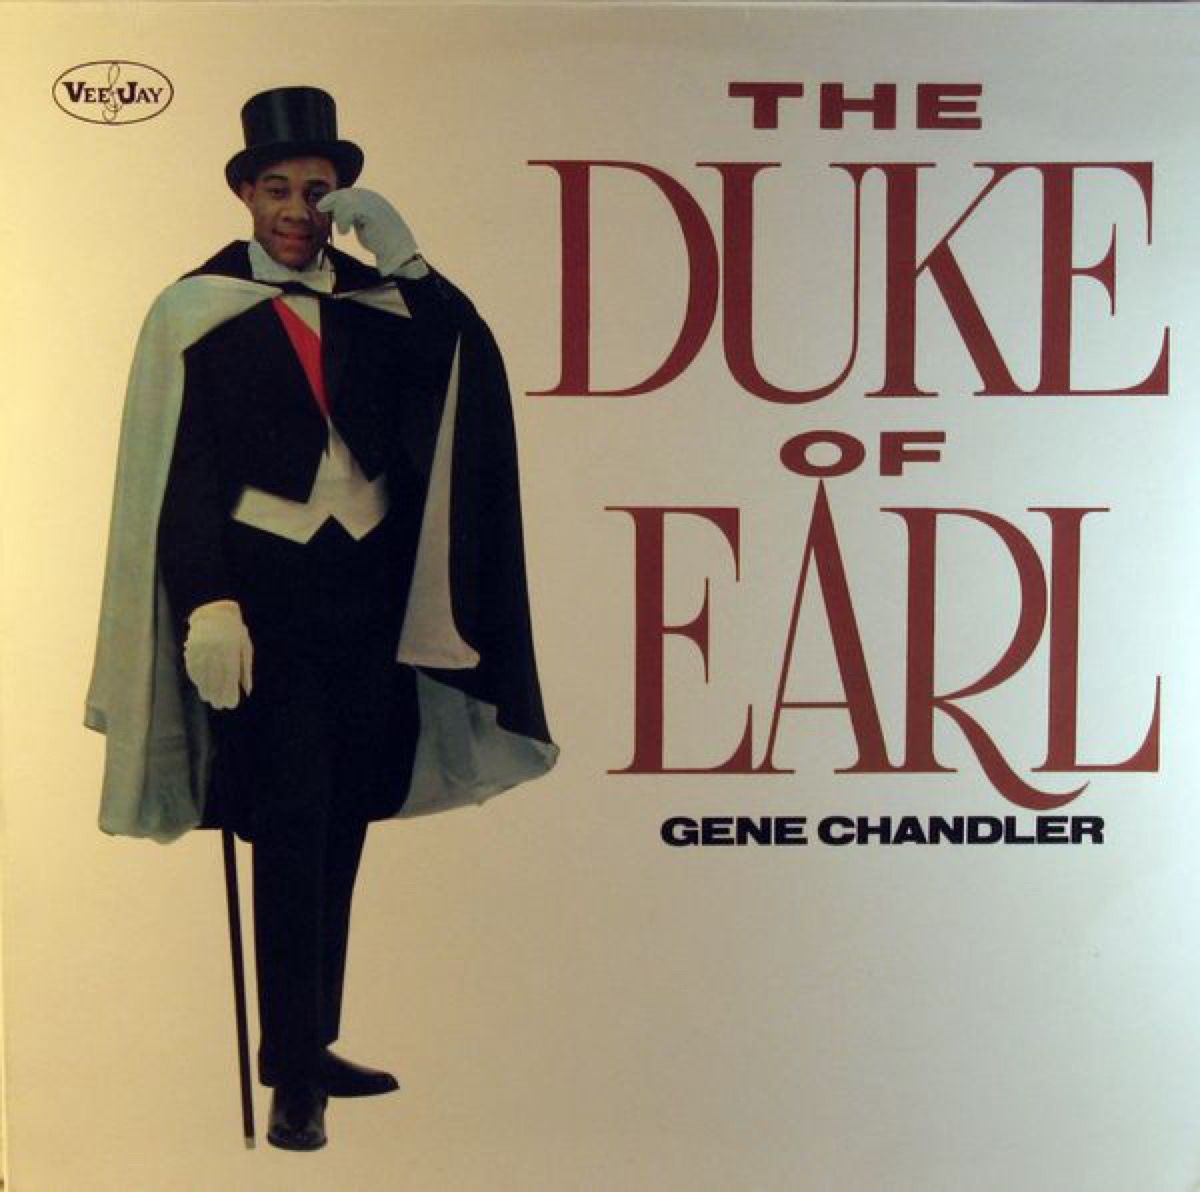 De hertog van Earl